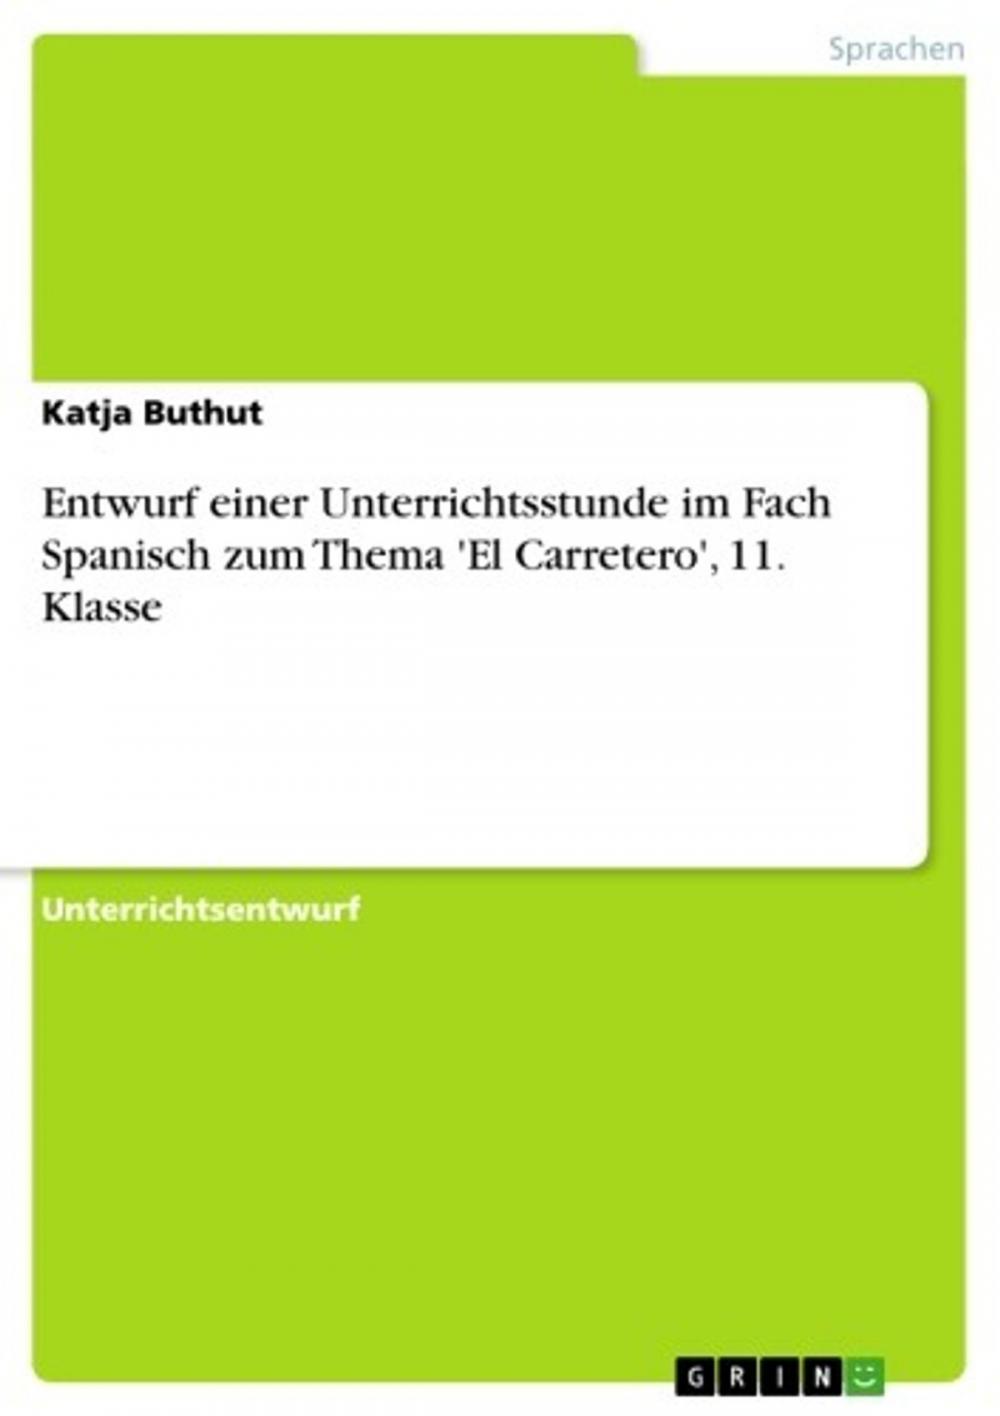 Big bigCover of Entwurf einer Unterrichtsstunde im Fach Spanisch zum Thema 'El Carretero', 11. Klasse